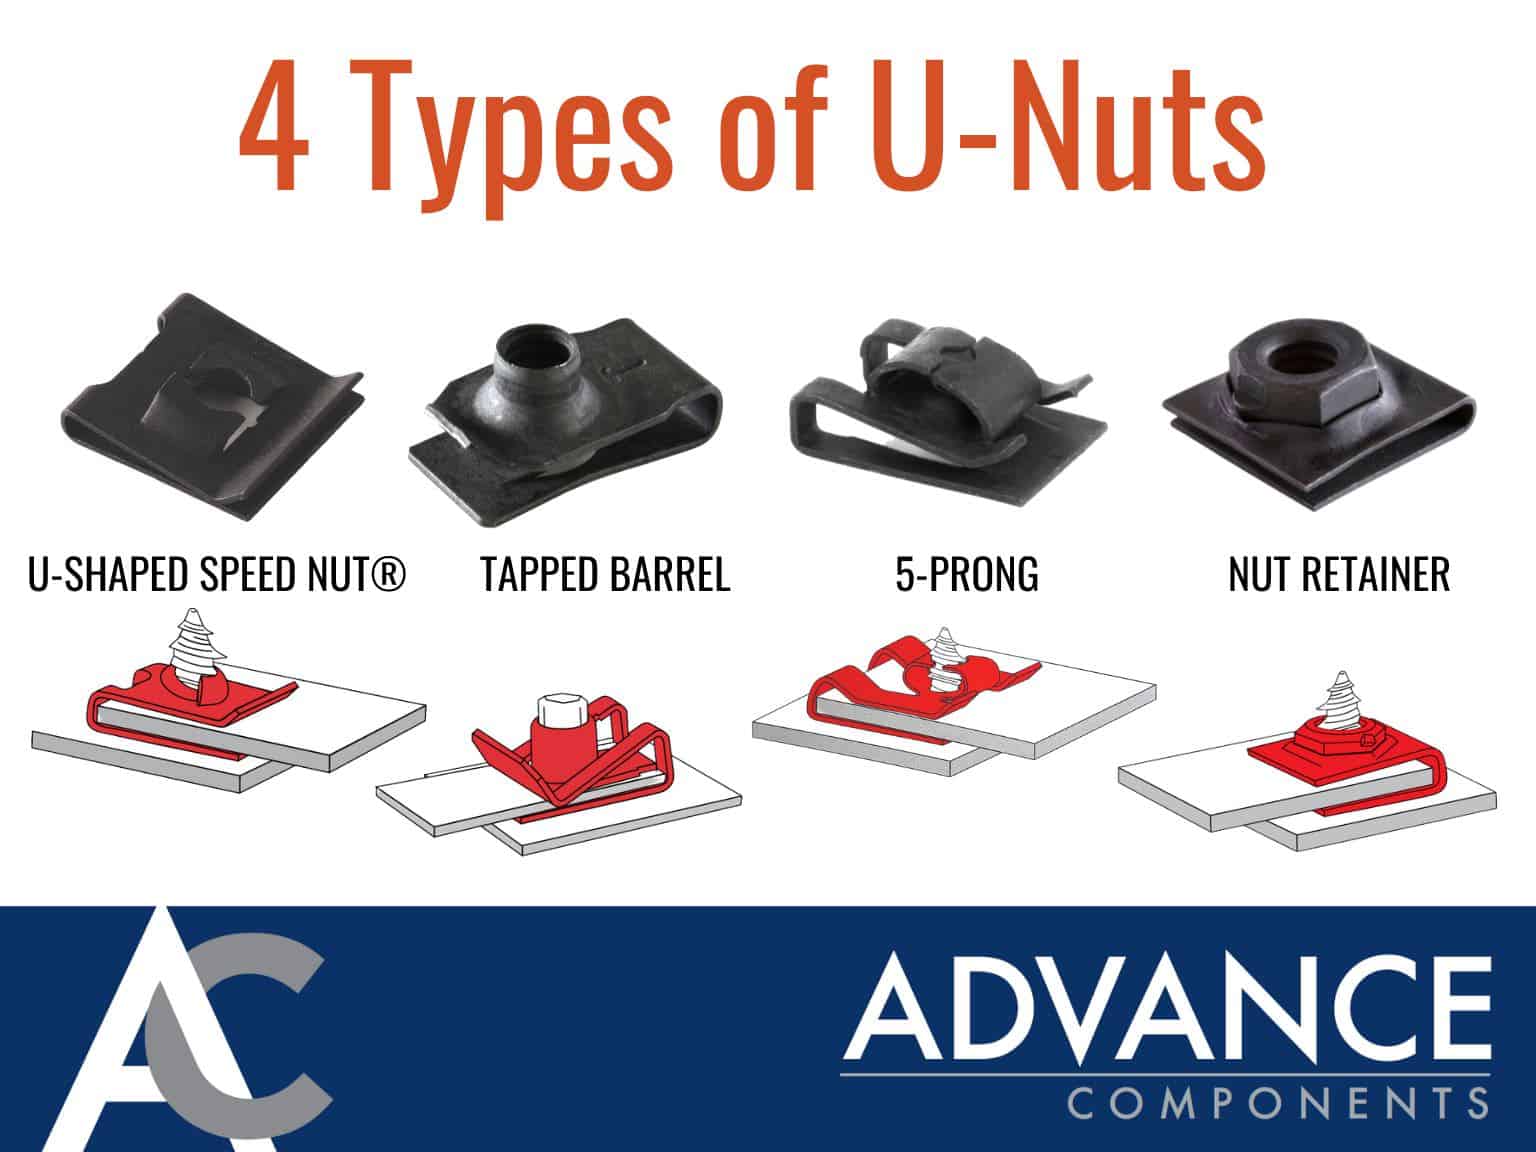 TYPES OF U-NUTS